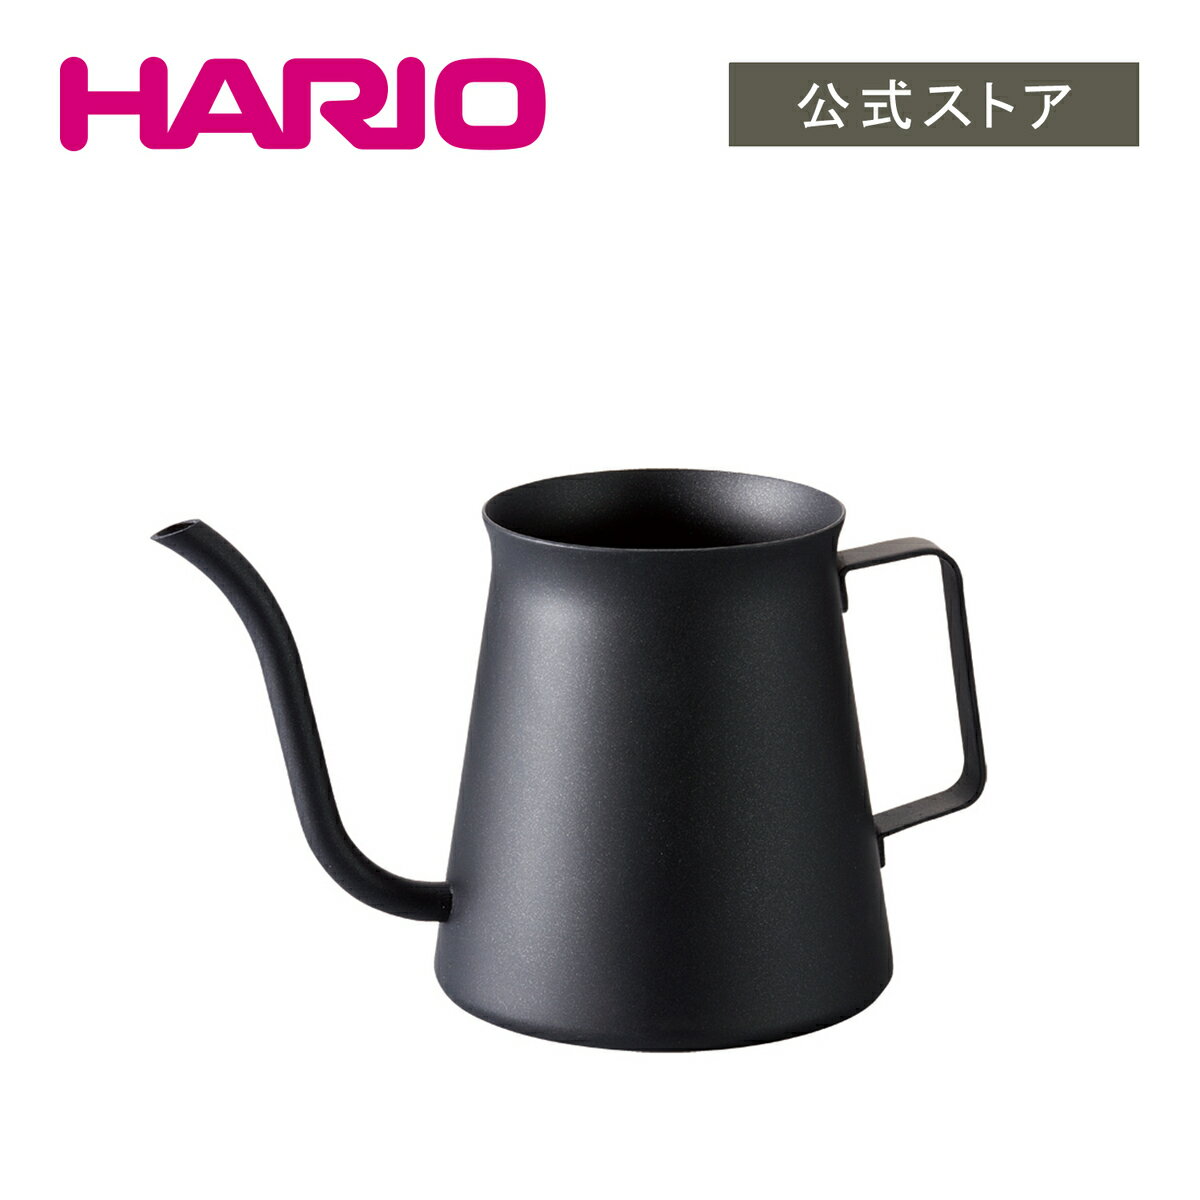 【公式ショップ】HARIO ミニドリップケトル・粕谷モデル 300ml